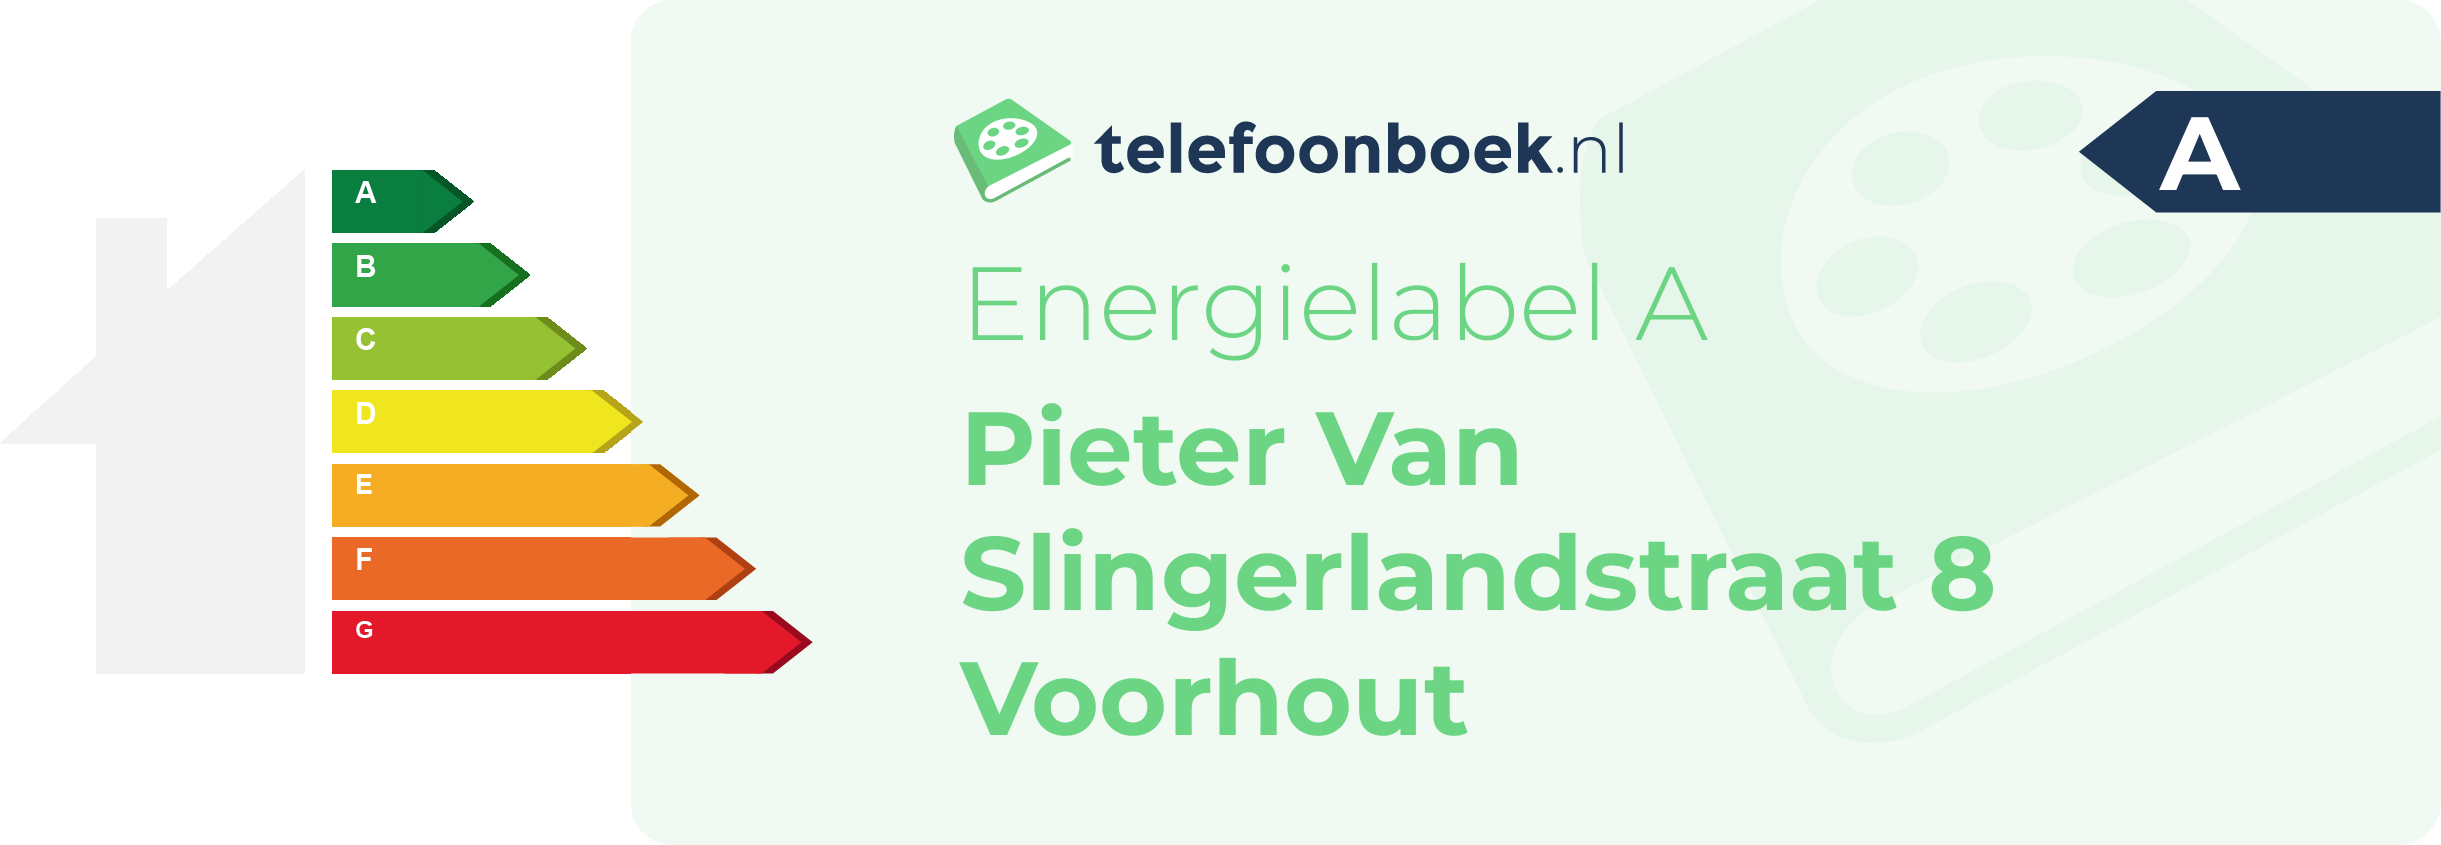 Energielabel Pieter Van Slingerlandstraat 8 Voorhout